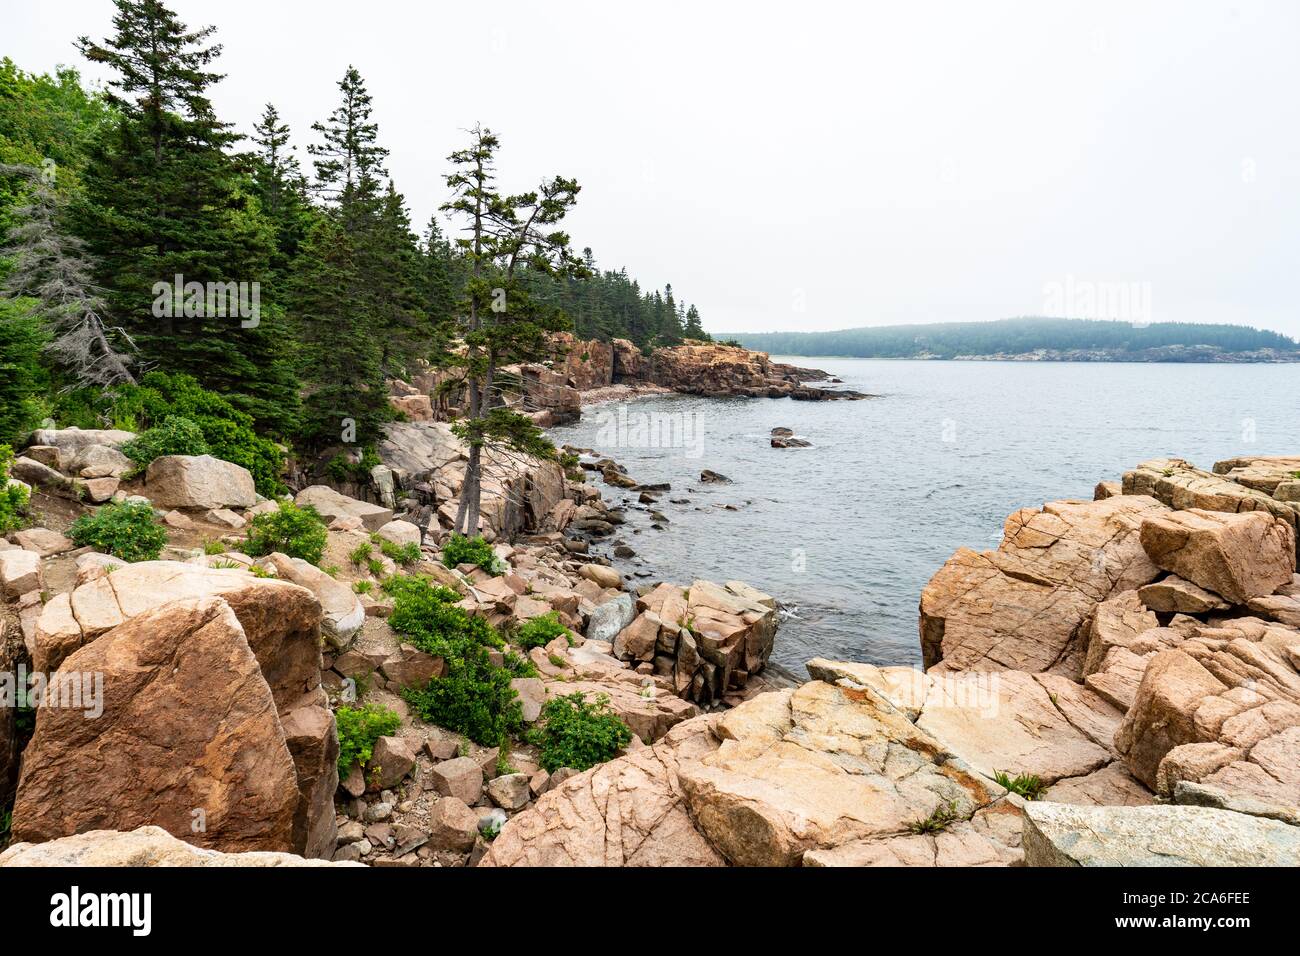 Des rochers de granit robustes et des arbres verts luxuriants bordent la côte du Maine dans le parc national Acadia. Banque D'Images